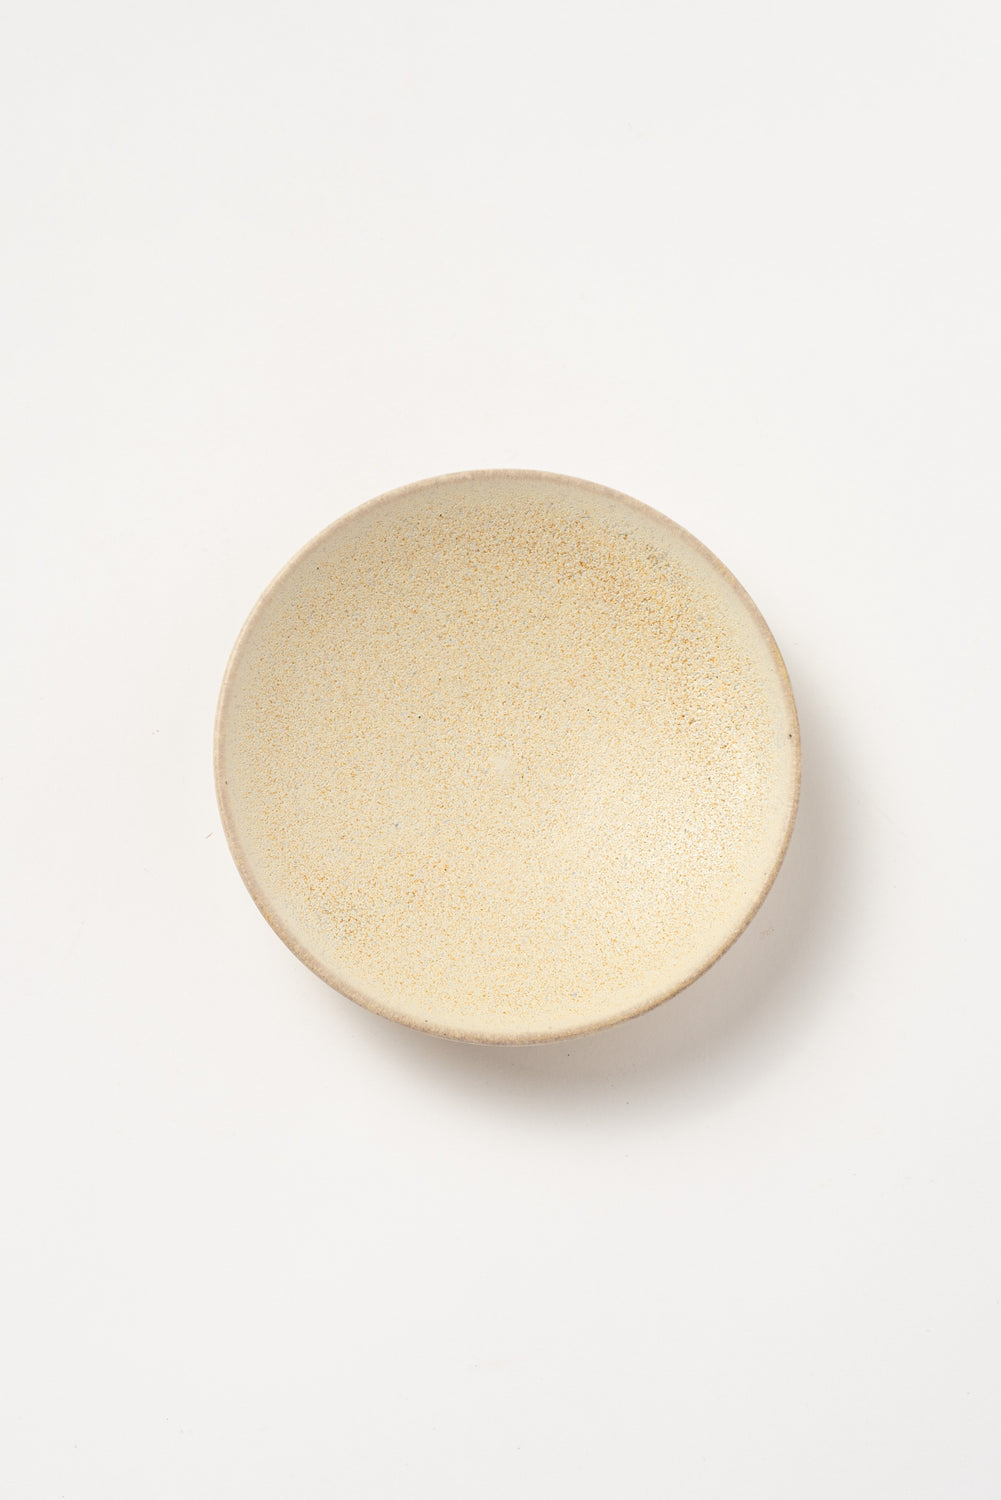 Small Ceramic Plate